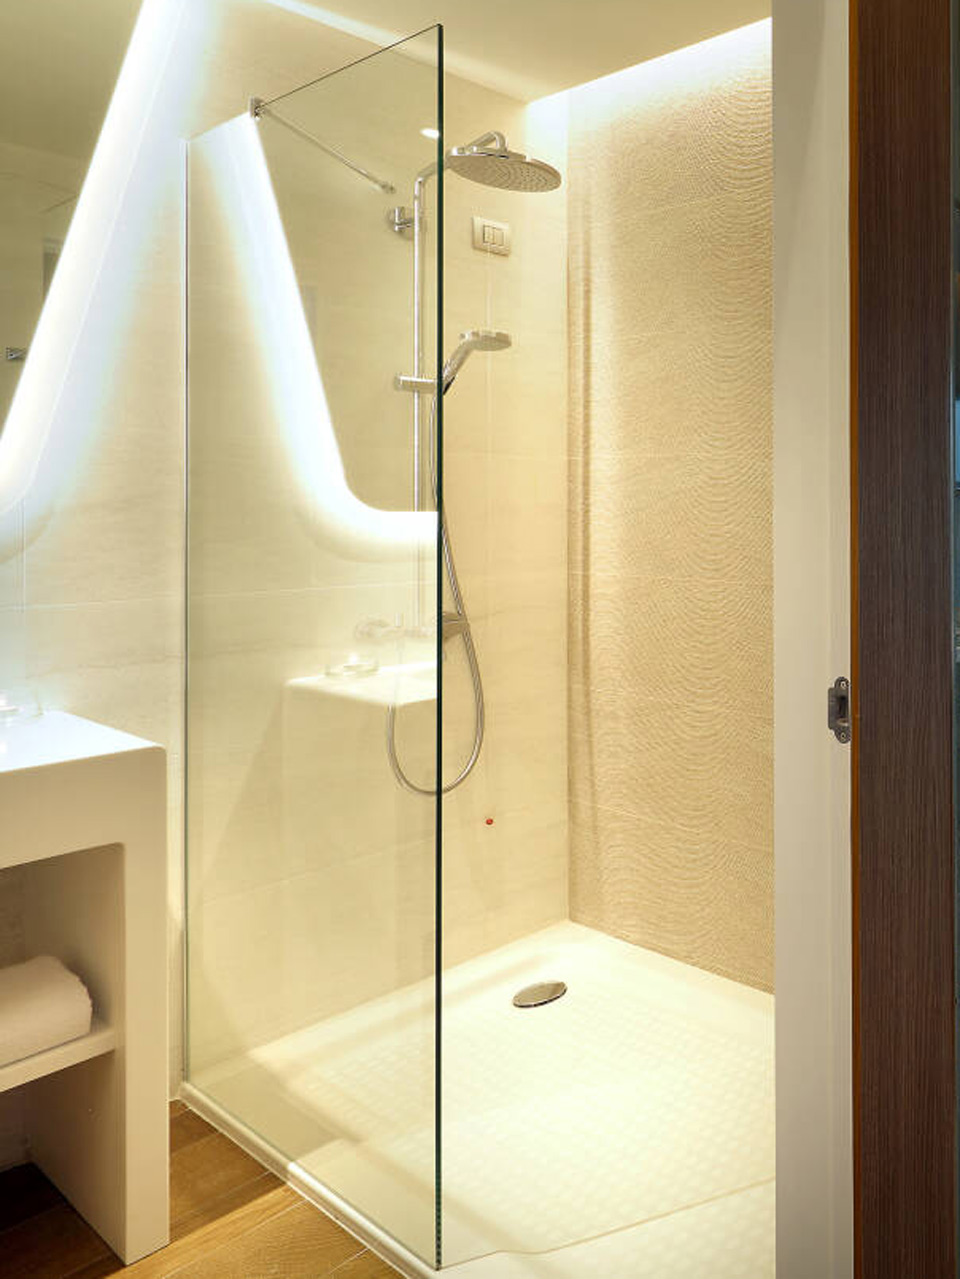 Beispiel für ein Badezimmer ohne Fenster.